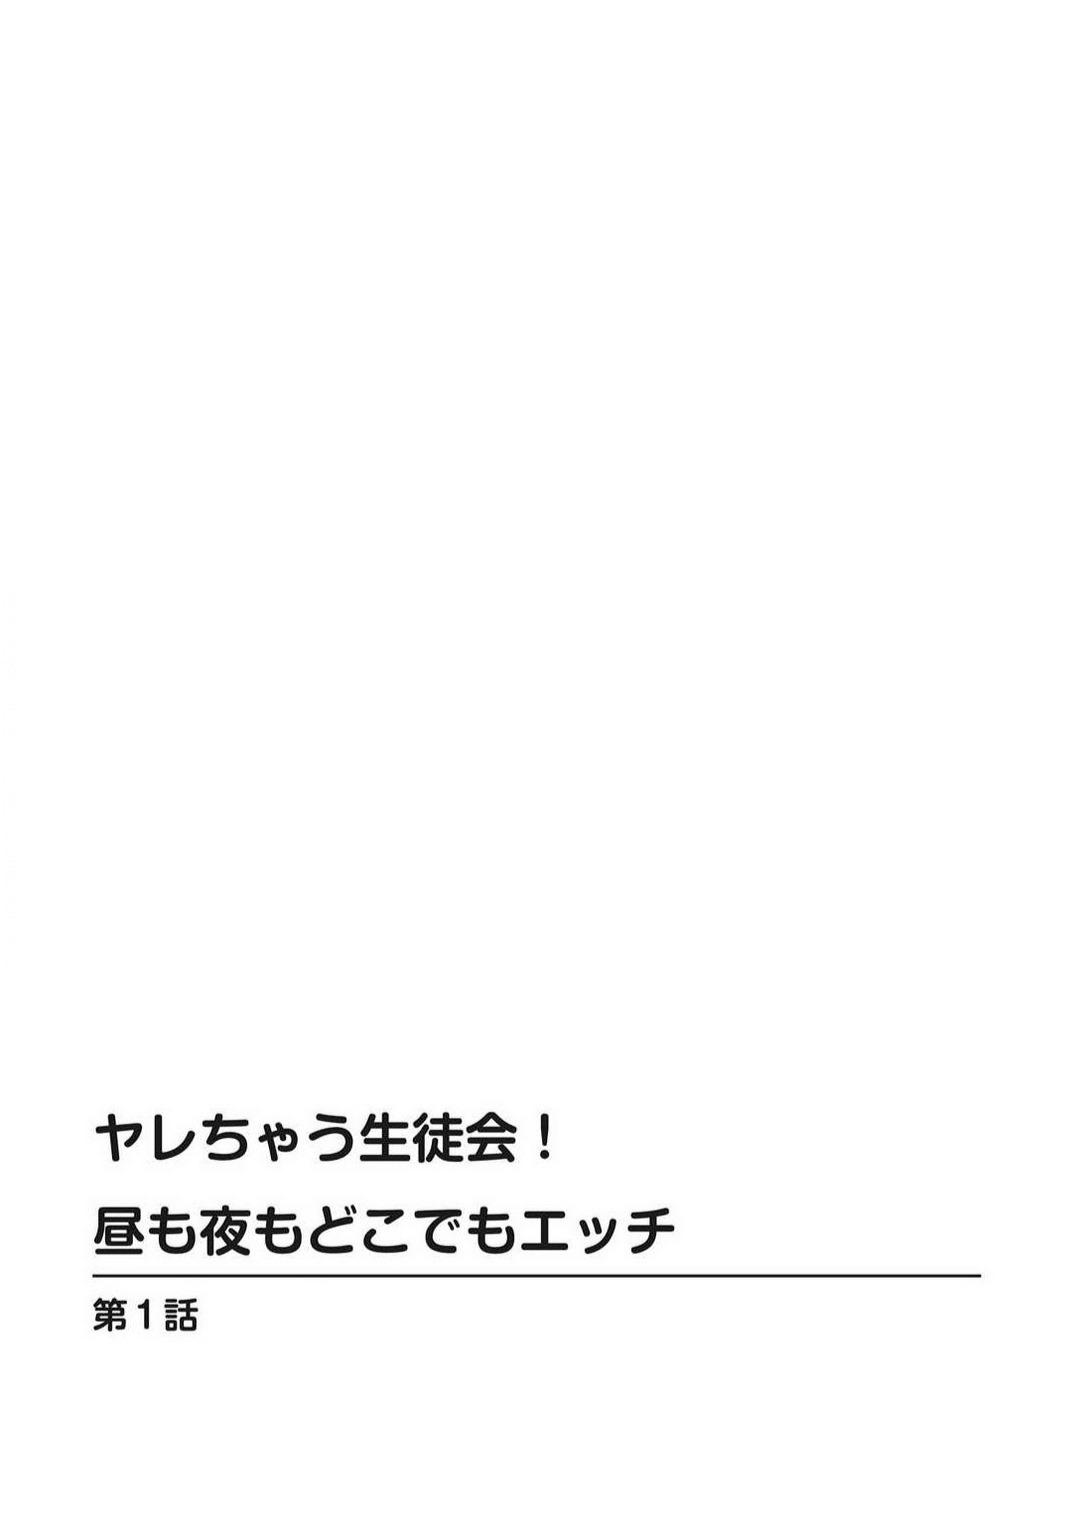 Tats Yarechau Seito-Kai! Hiru mo Yoru mo Doko Demo Etchi~Chp.1-3 Plumper - Page 2